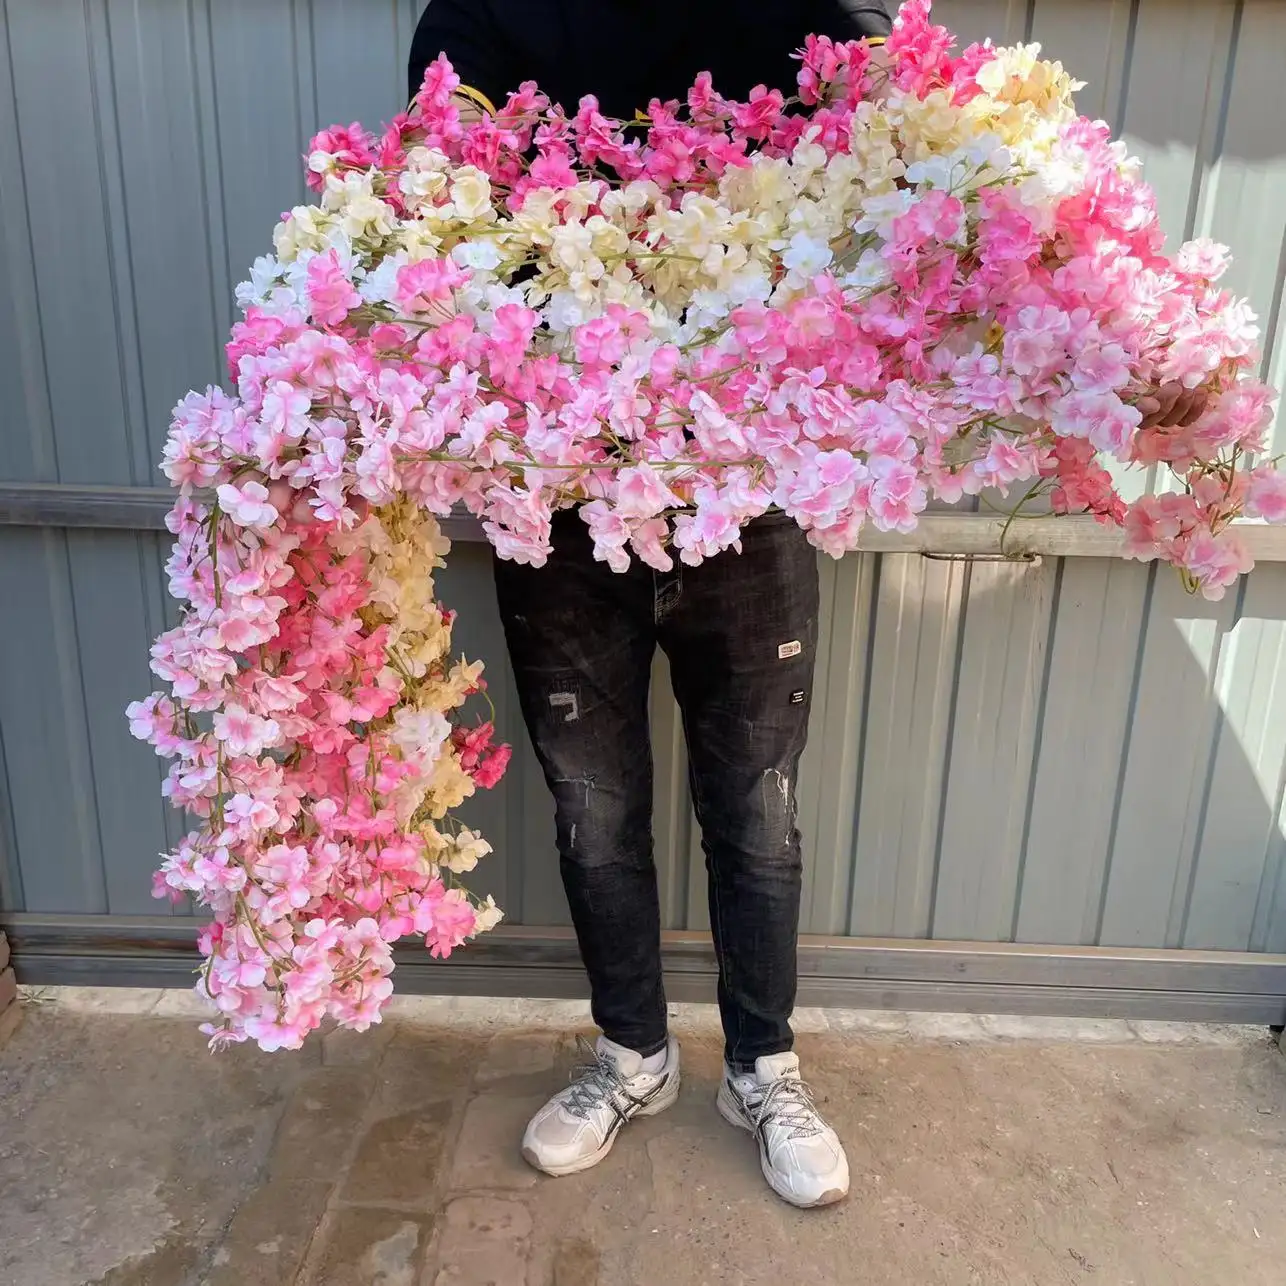 زهرة كرانديلا صناعية لتزيين حفلات الزفاف بزهور الكرز الوردية بطول 1.8 متر بخصم رائع